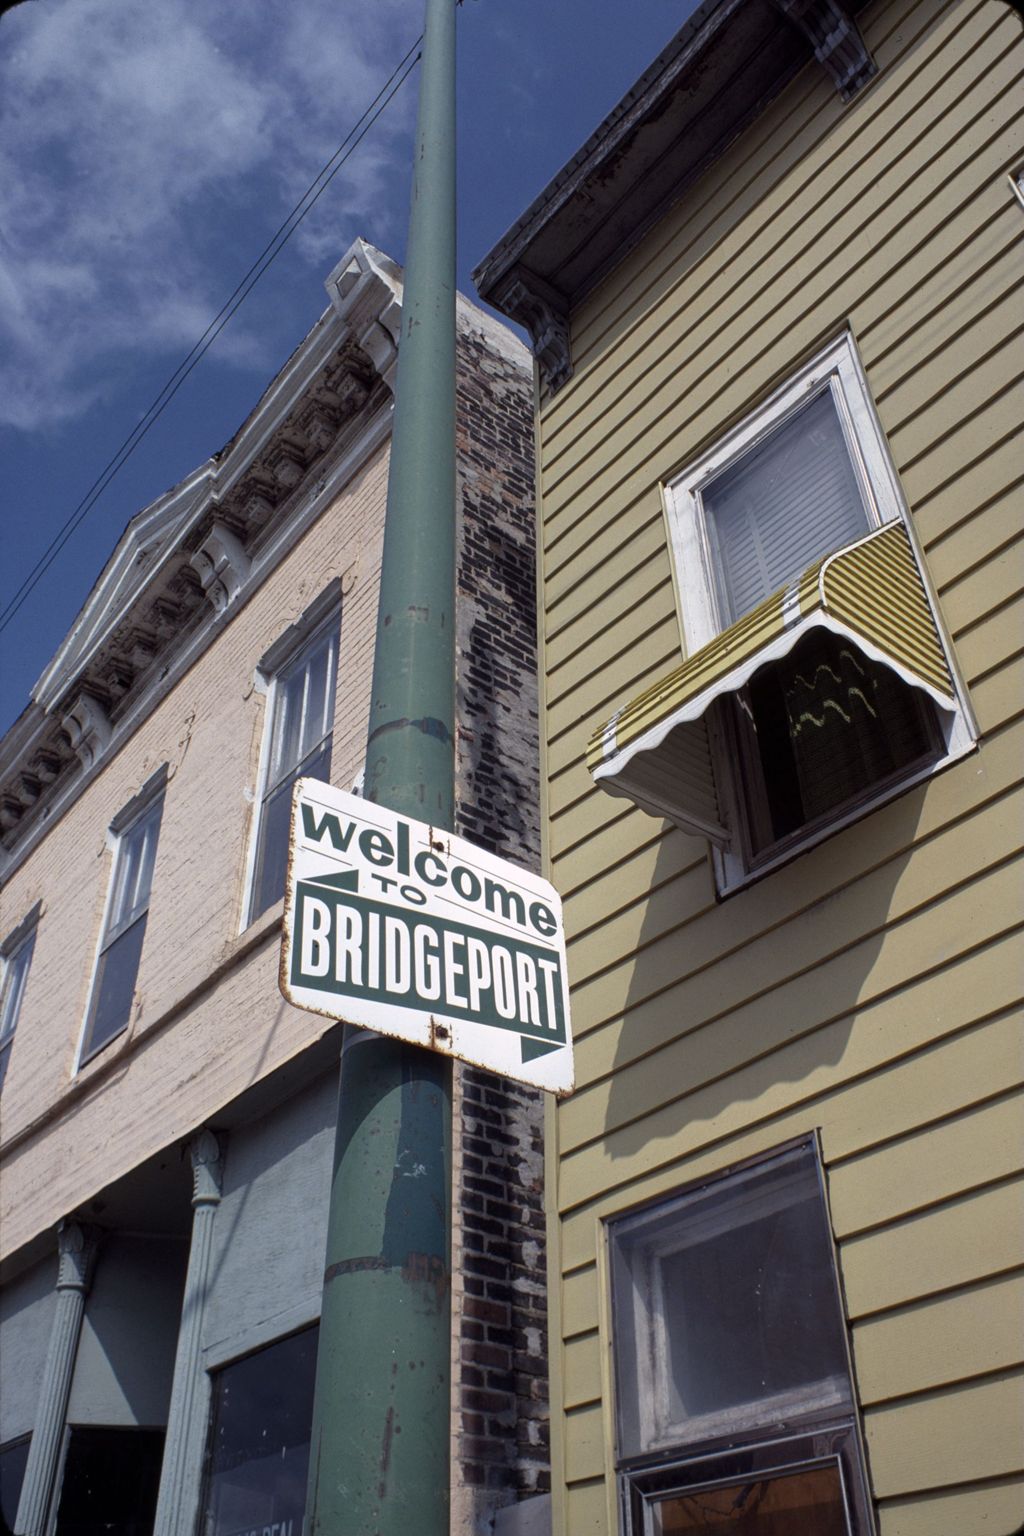 Welcome to Bridgeport sign